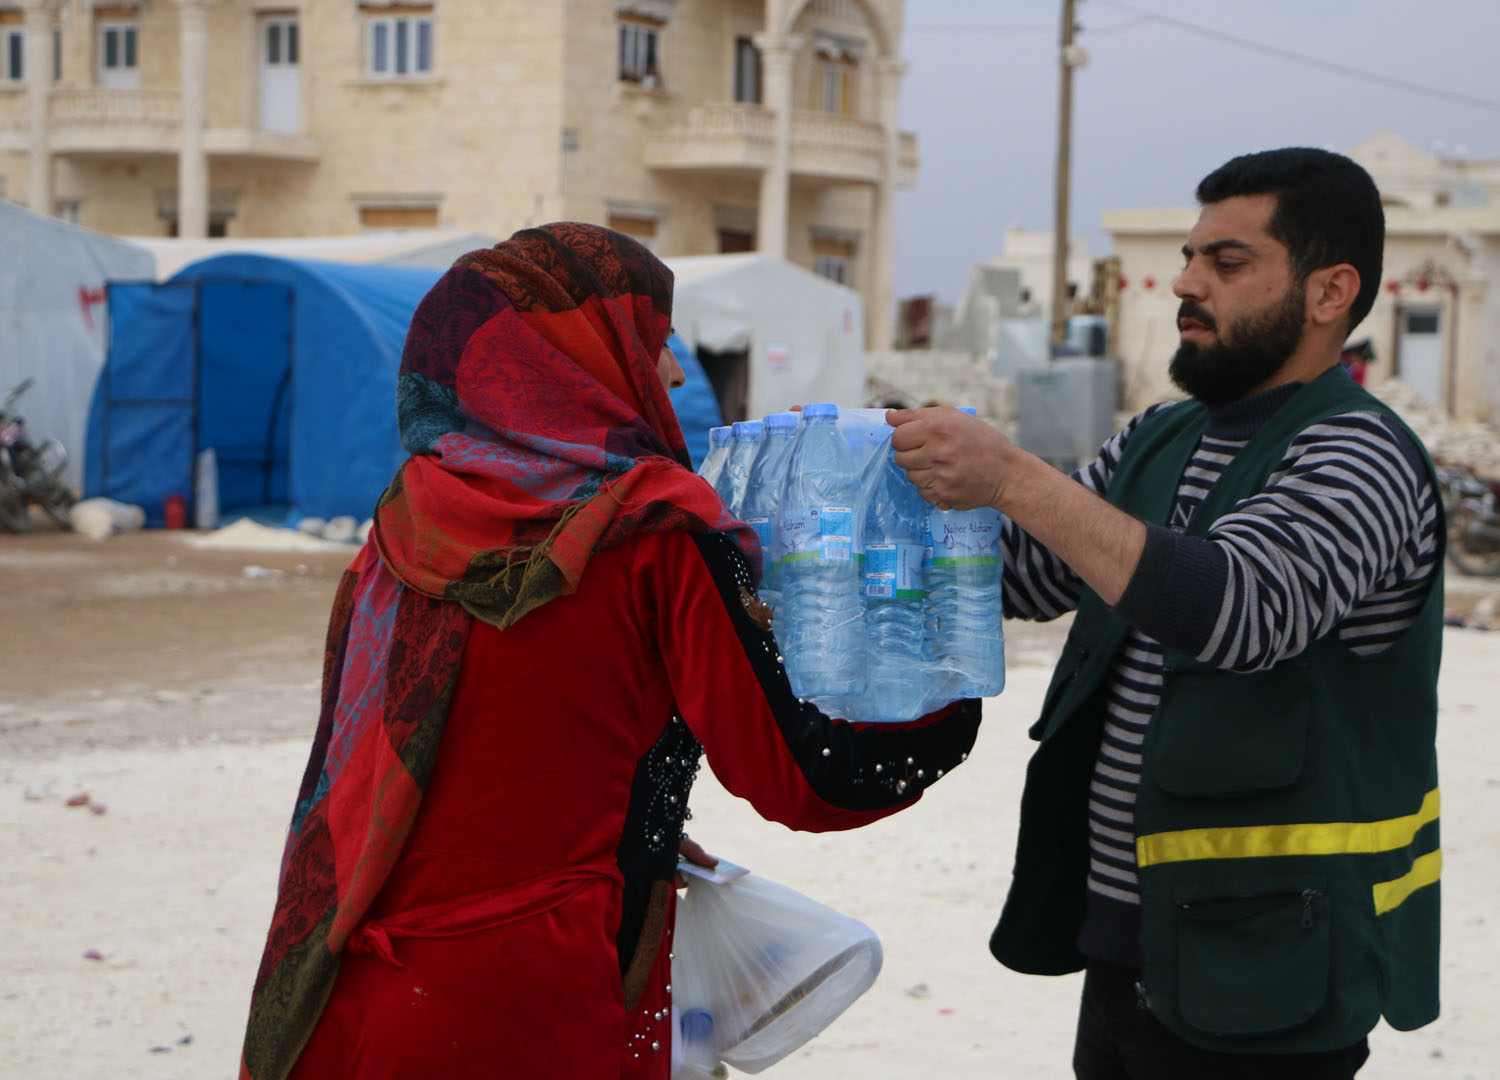 Mann (von schräg vorne) reicht einer Frau (von schräg hinten) ein Gebinde von Kunststoffflaschen mit Wasser